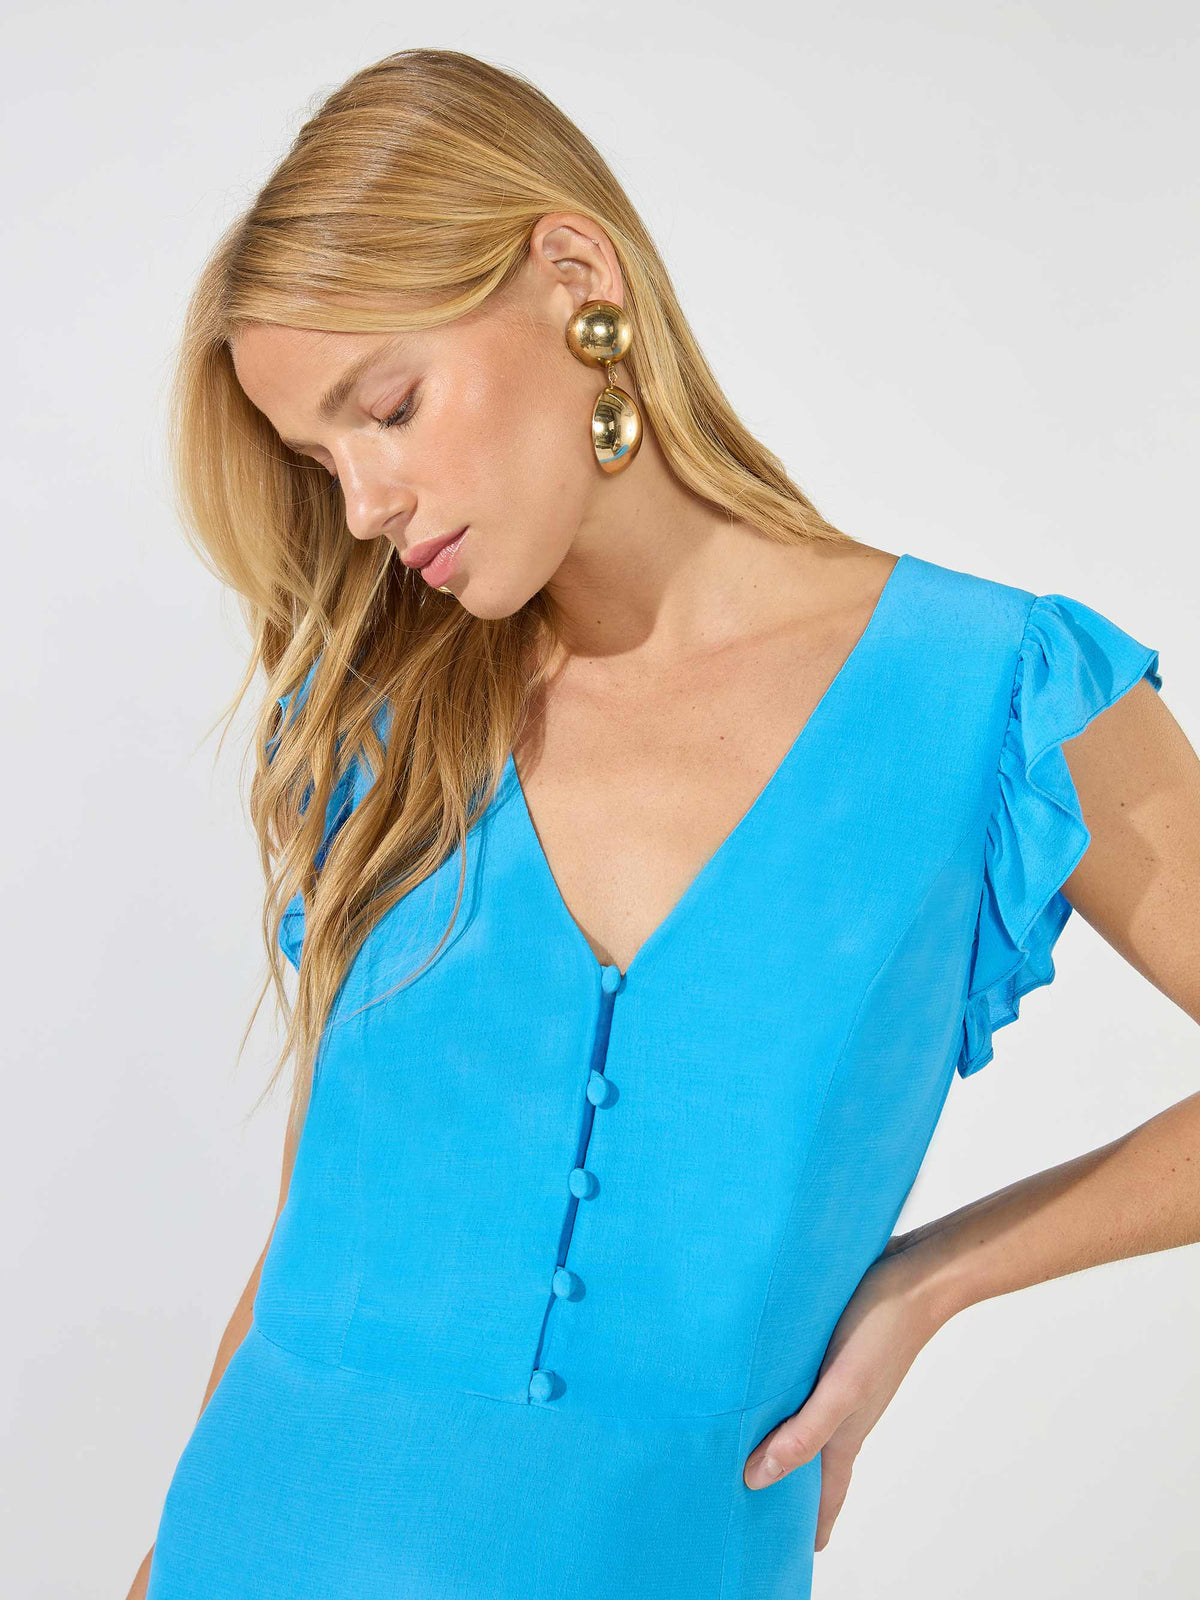 Blue Frill Sleeve Midi Dress